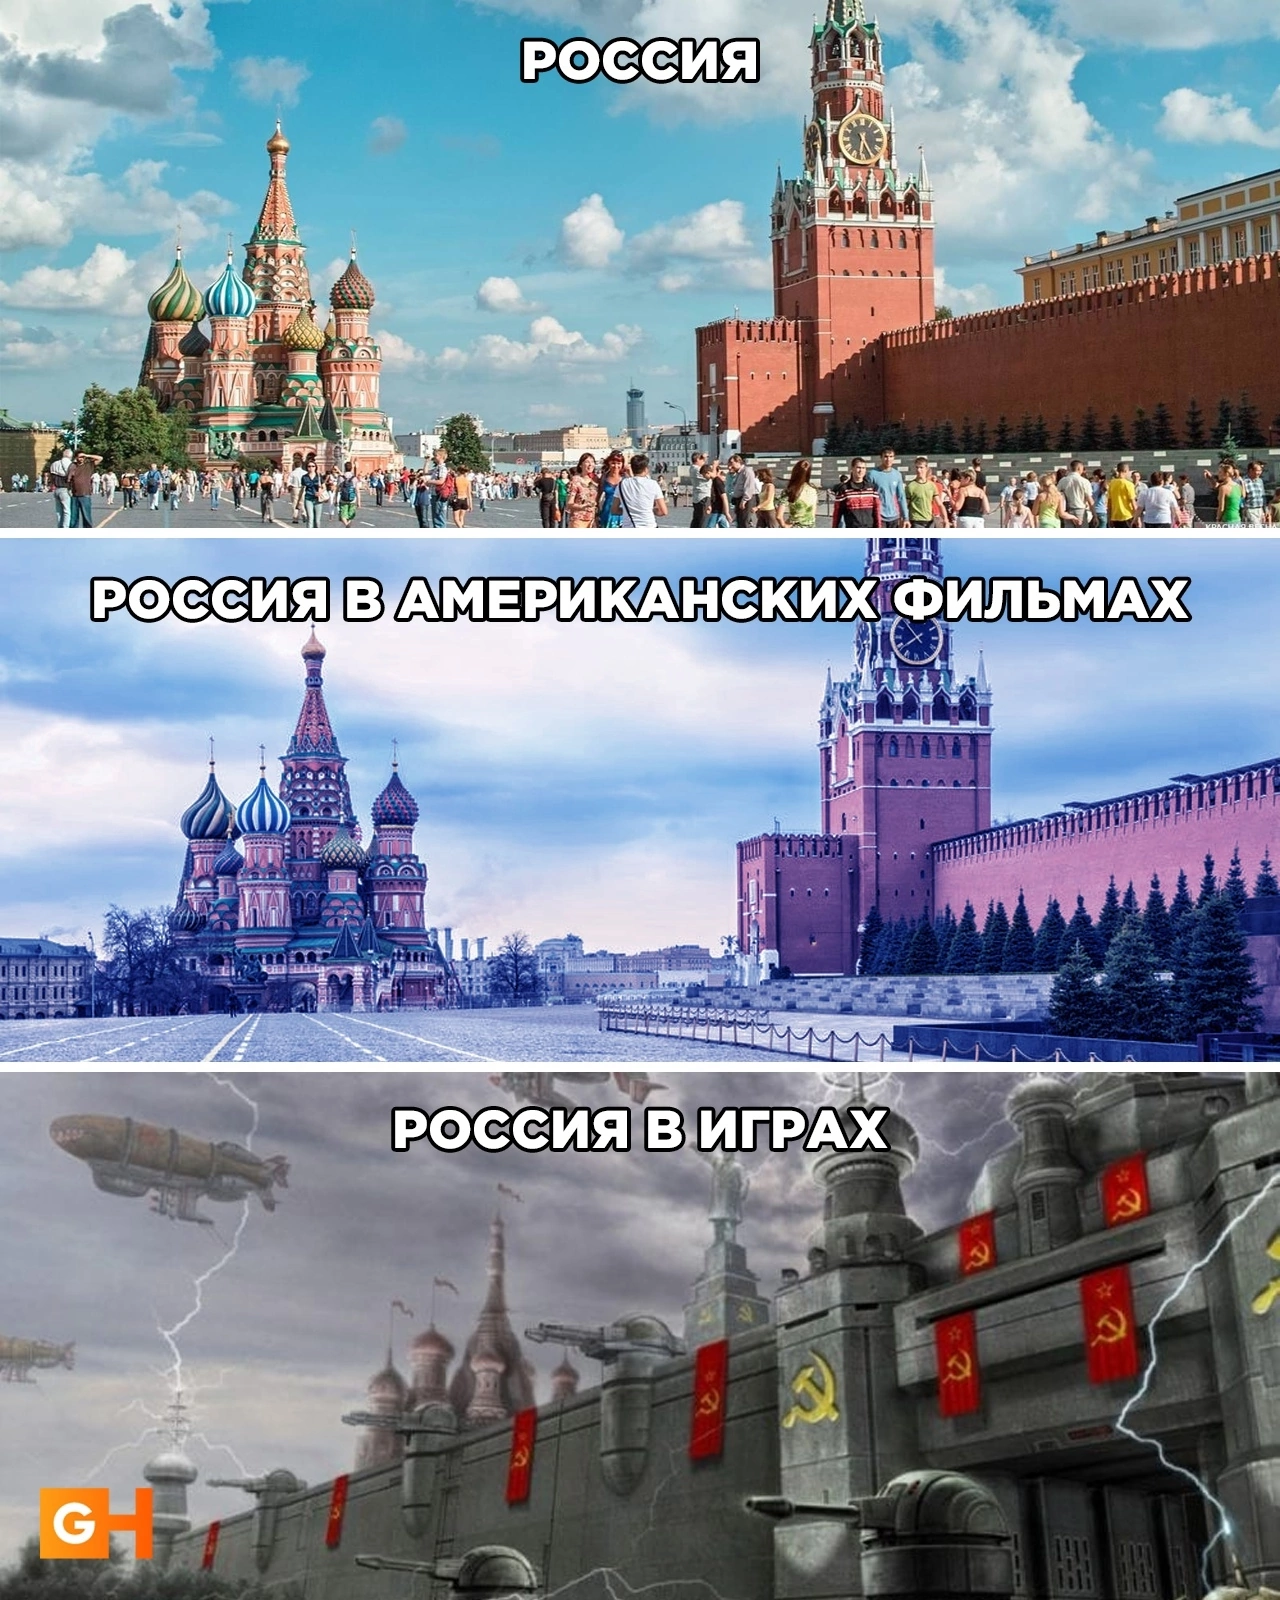 Такая разная Россия⁠⁠